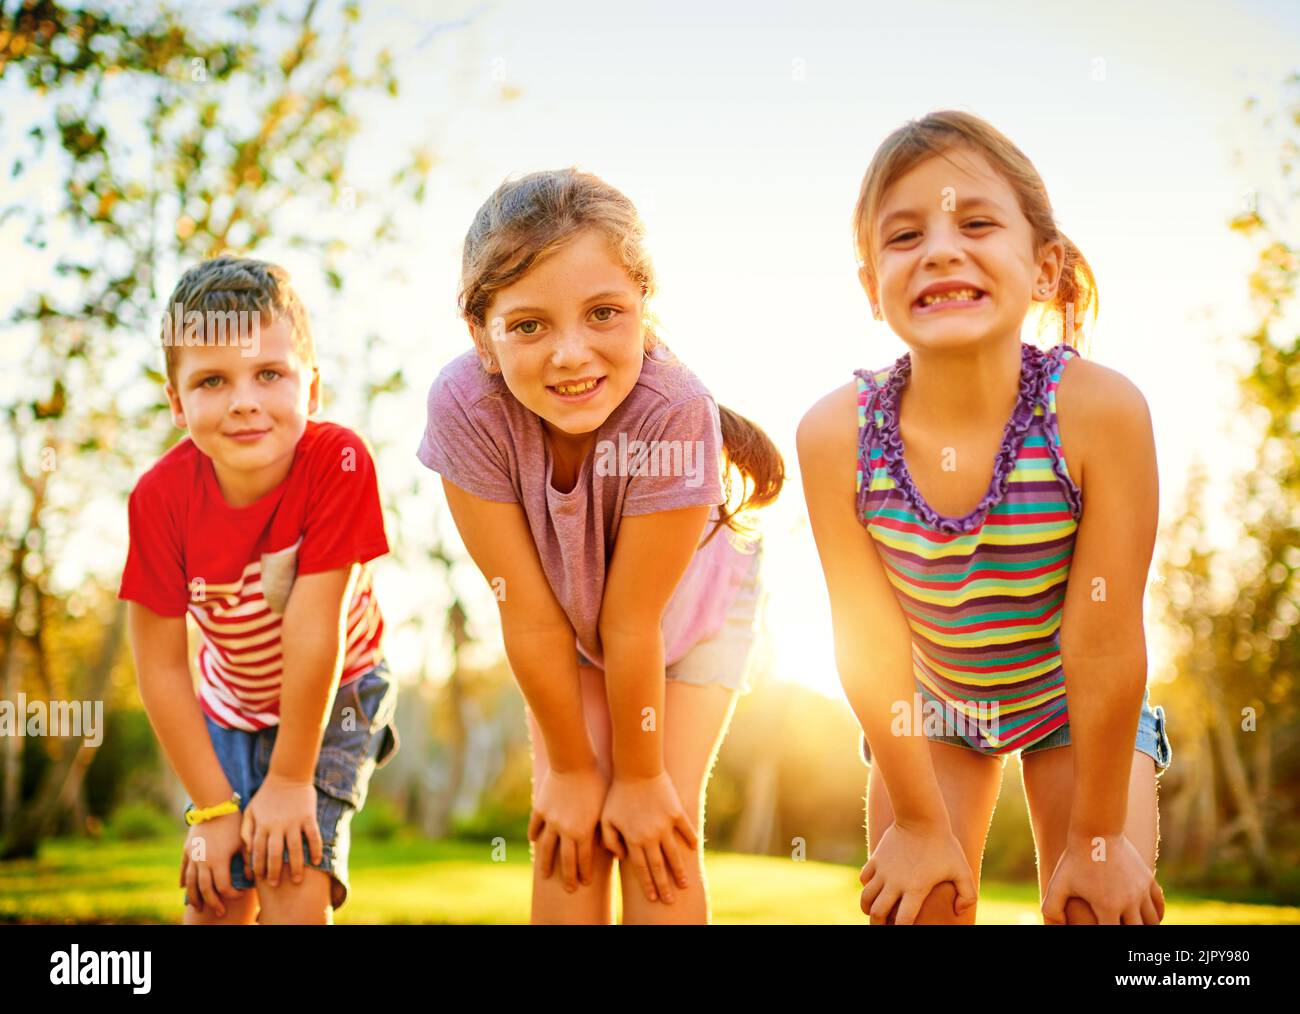 Spaß in der Sonne. Porträt einer Gruppe von kleinen Kindern, die im Freien zusammen spielen. Stockfoto